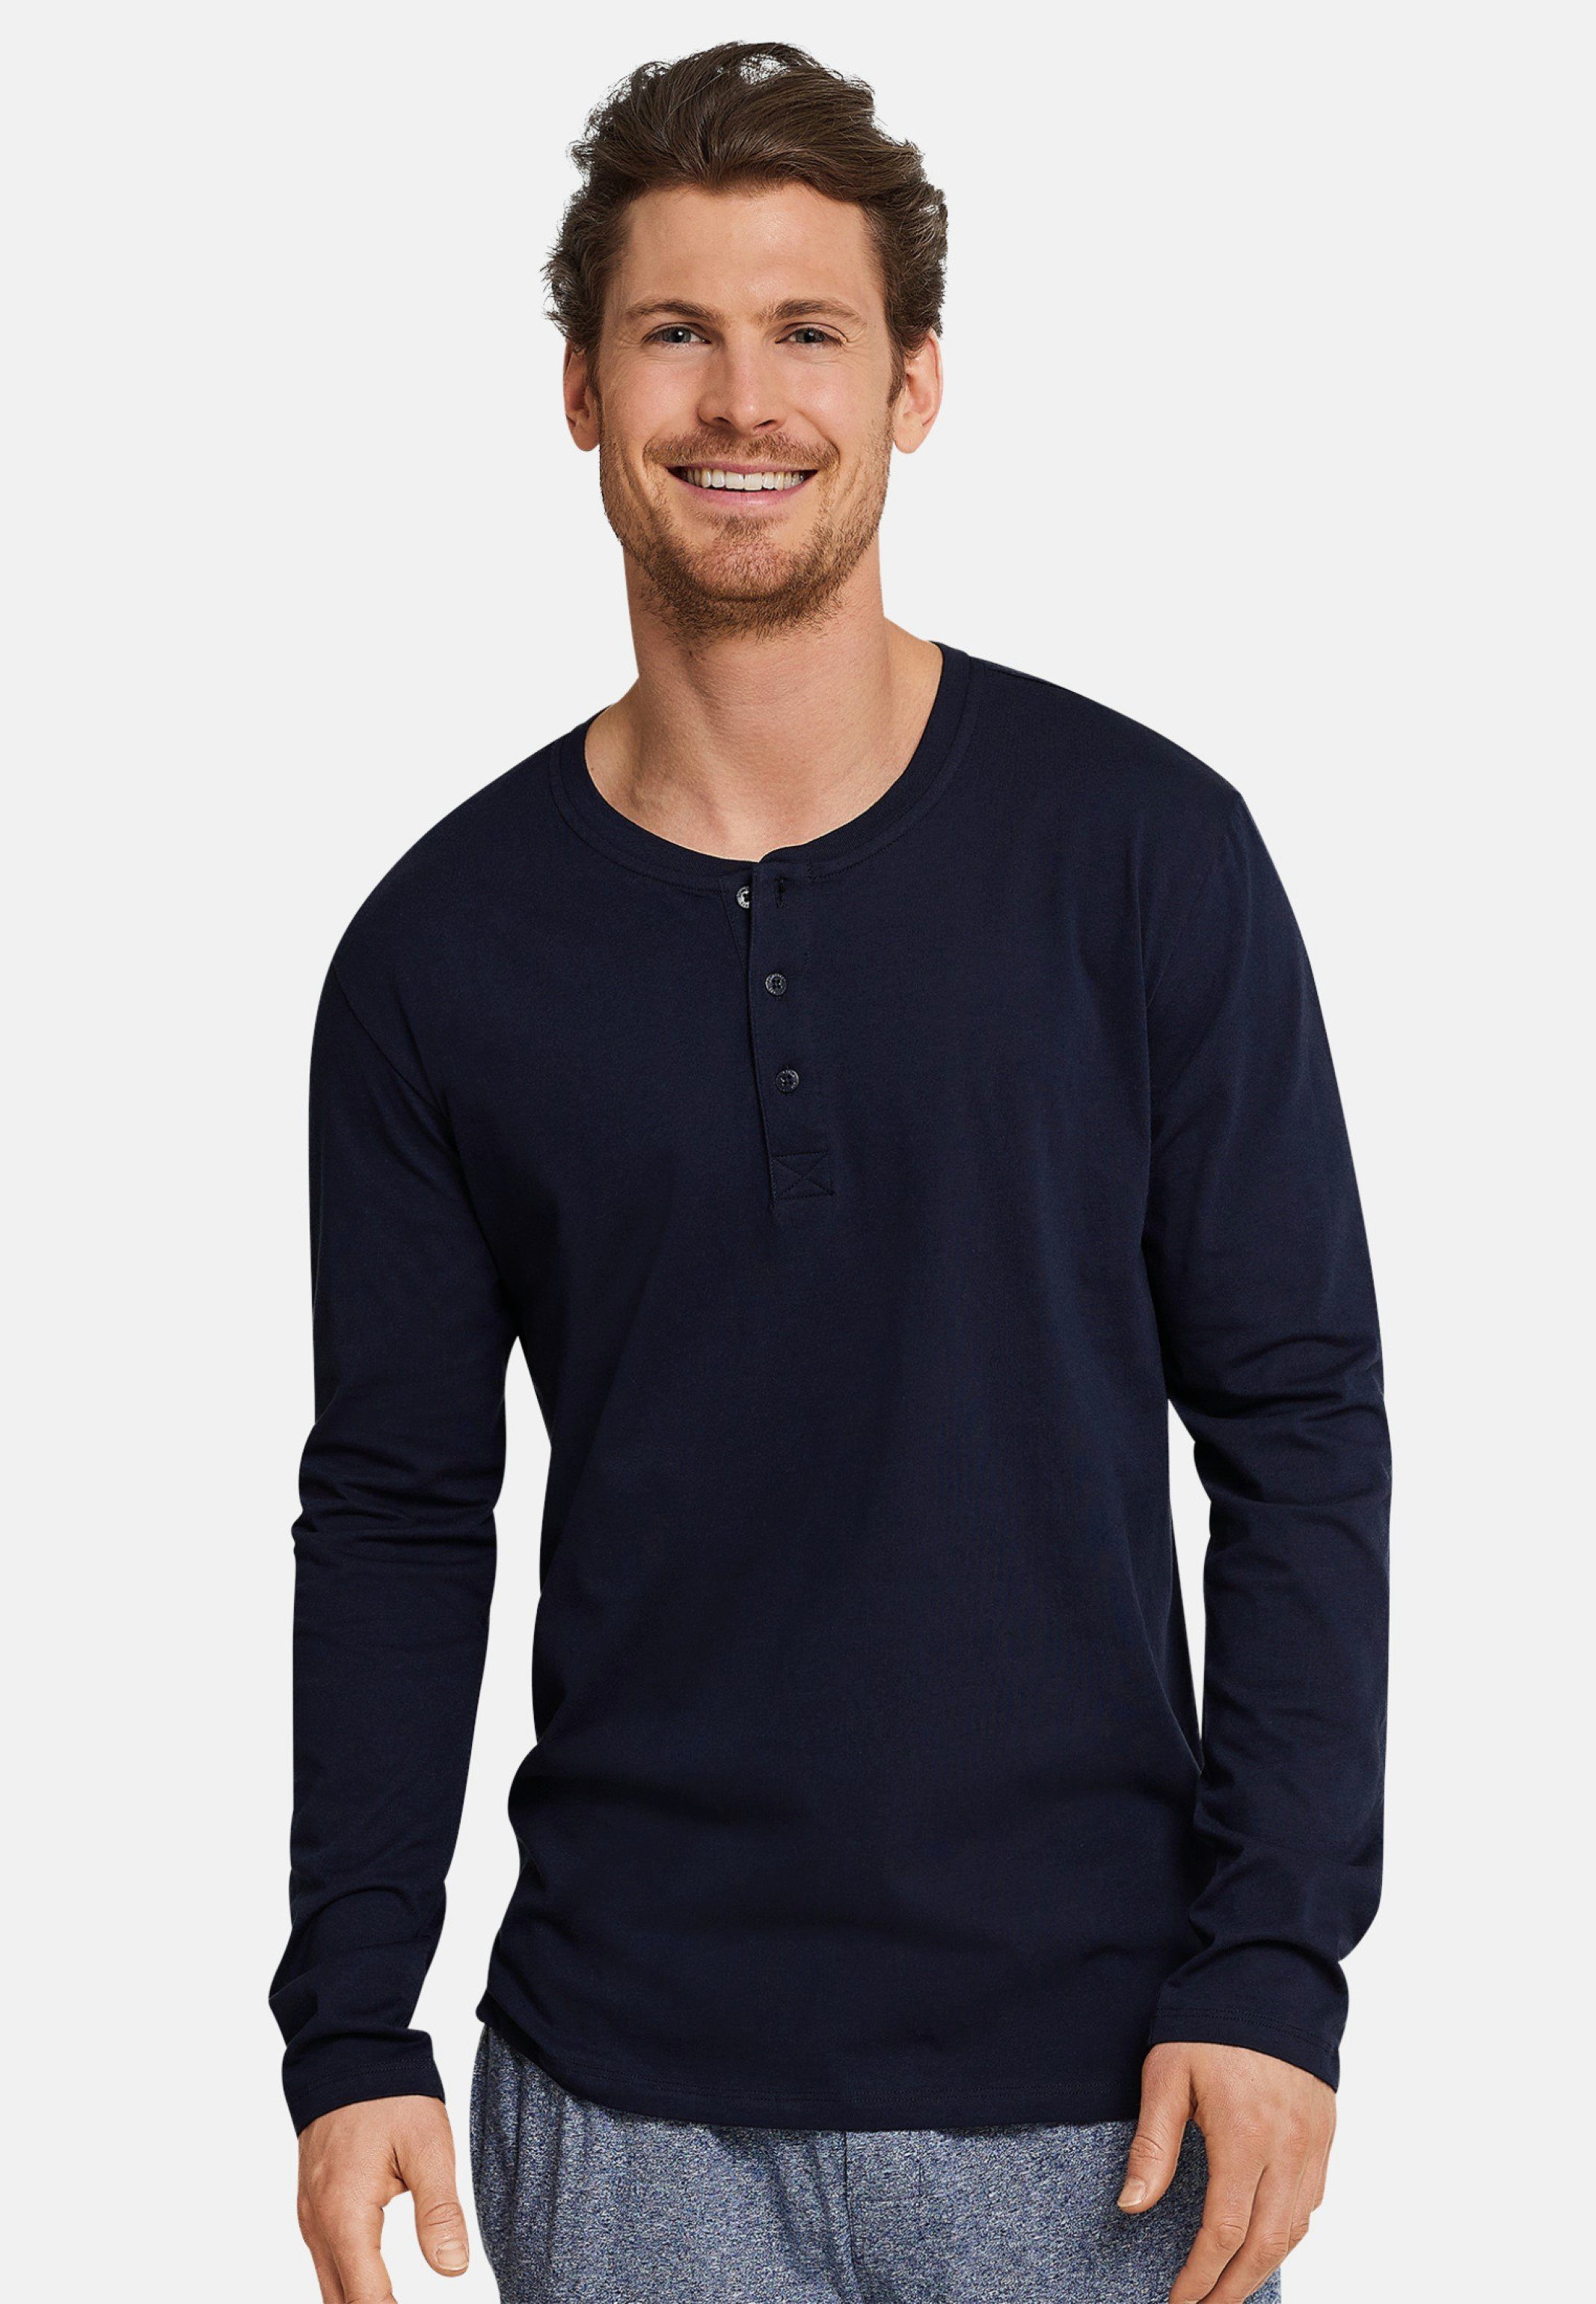 Schiesser Pyjamaoberteil & Relax langarm Shirt (1-tlg) Basic Mix - Baumwolle - Schlafanzug Dunkelblau